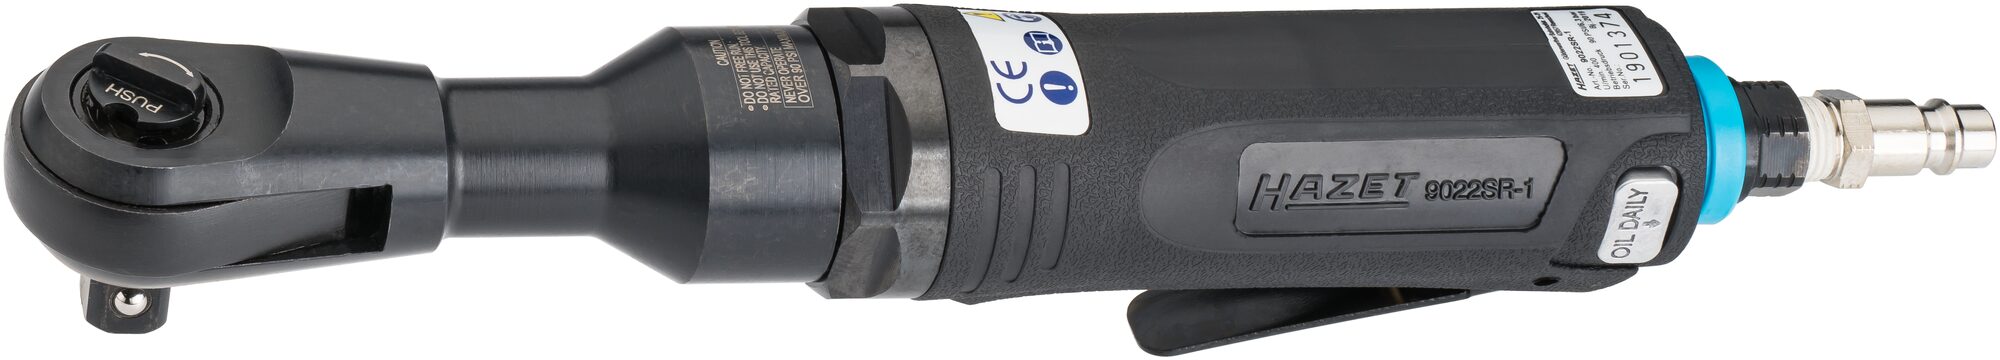 HAZET Schlag-Ratschenschrauber 9022SR-1 · Vierkant massiv 12,5 mm (1/2 Zoll) · Hochleistungs-Stift-Schlagwerk